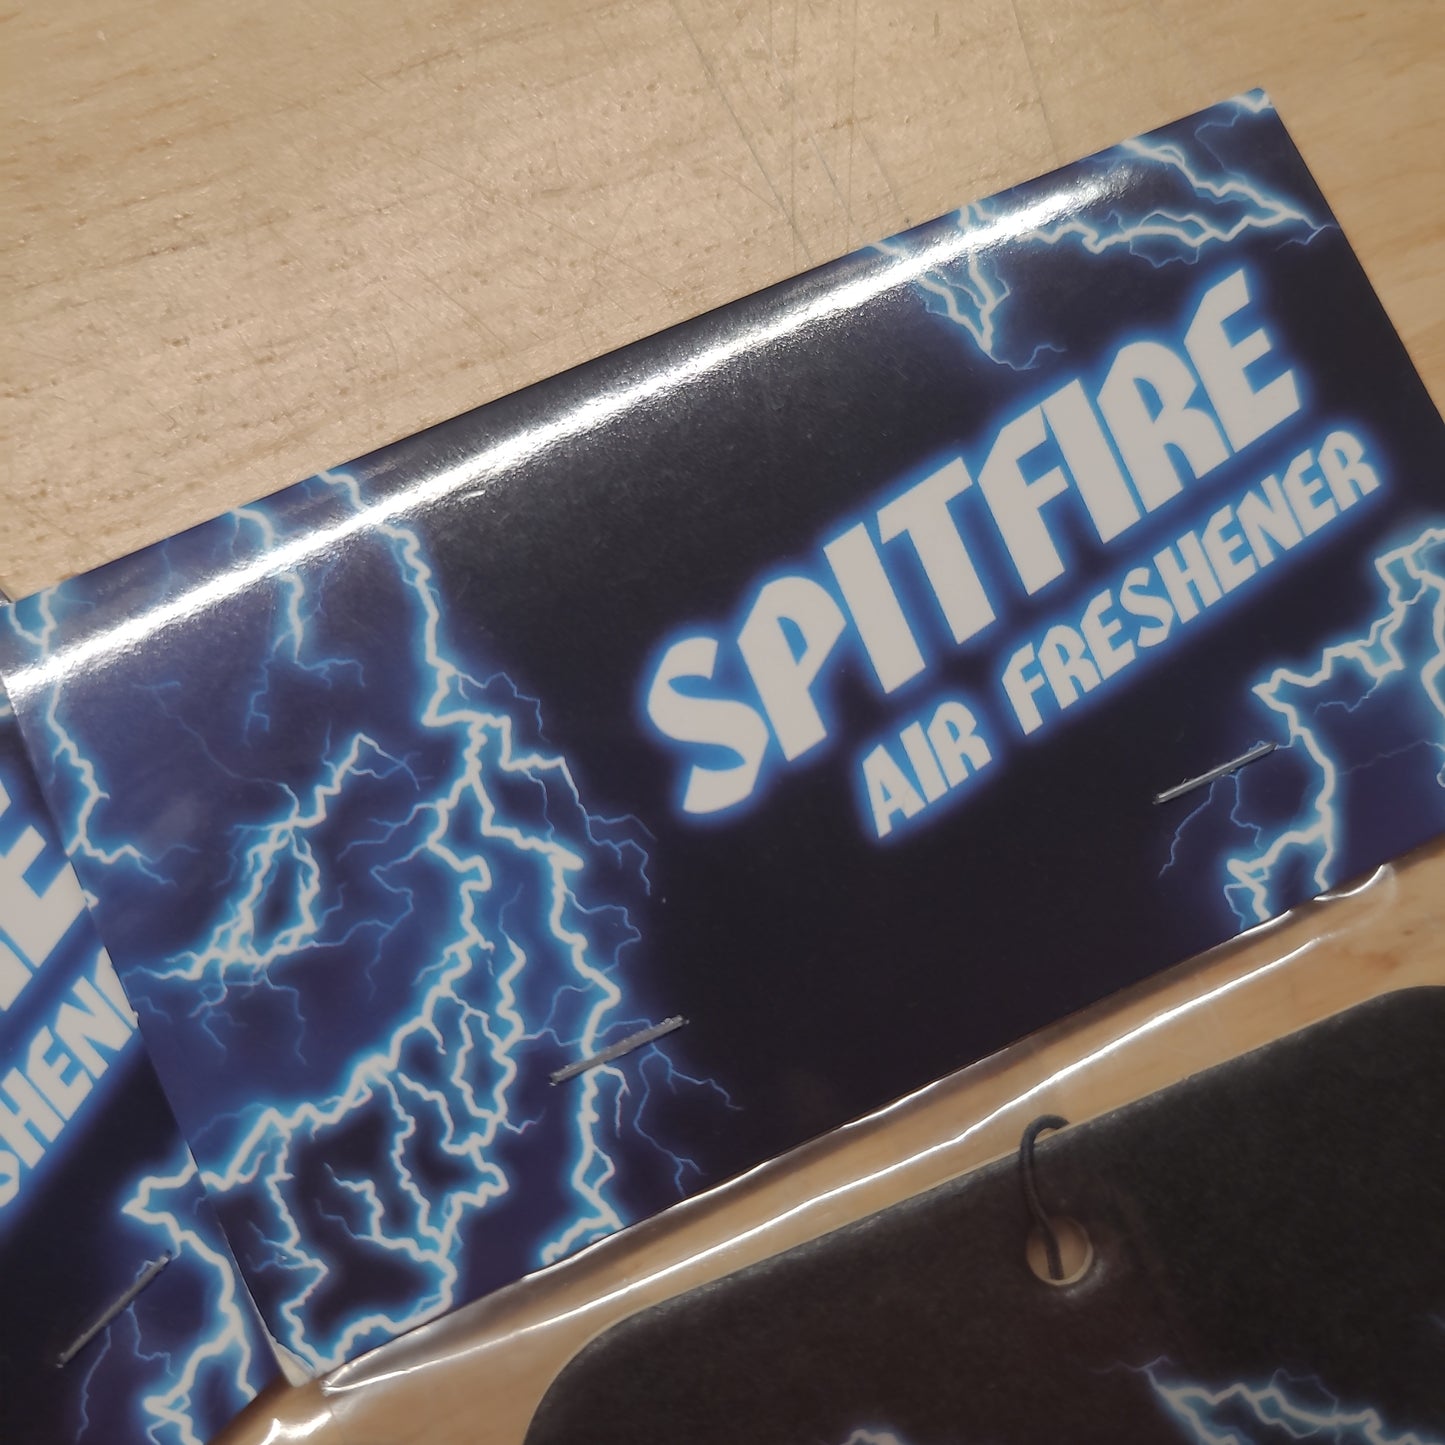 Spitfire - Firebolt Air Freshener